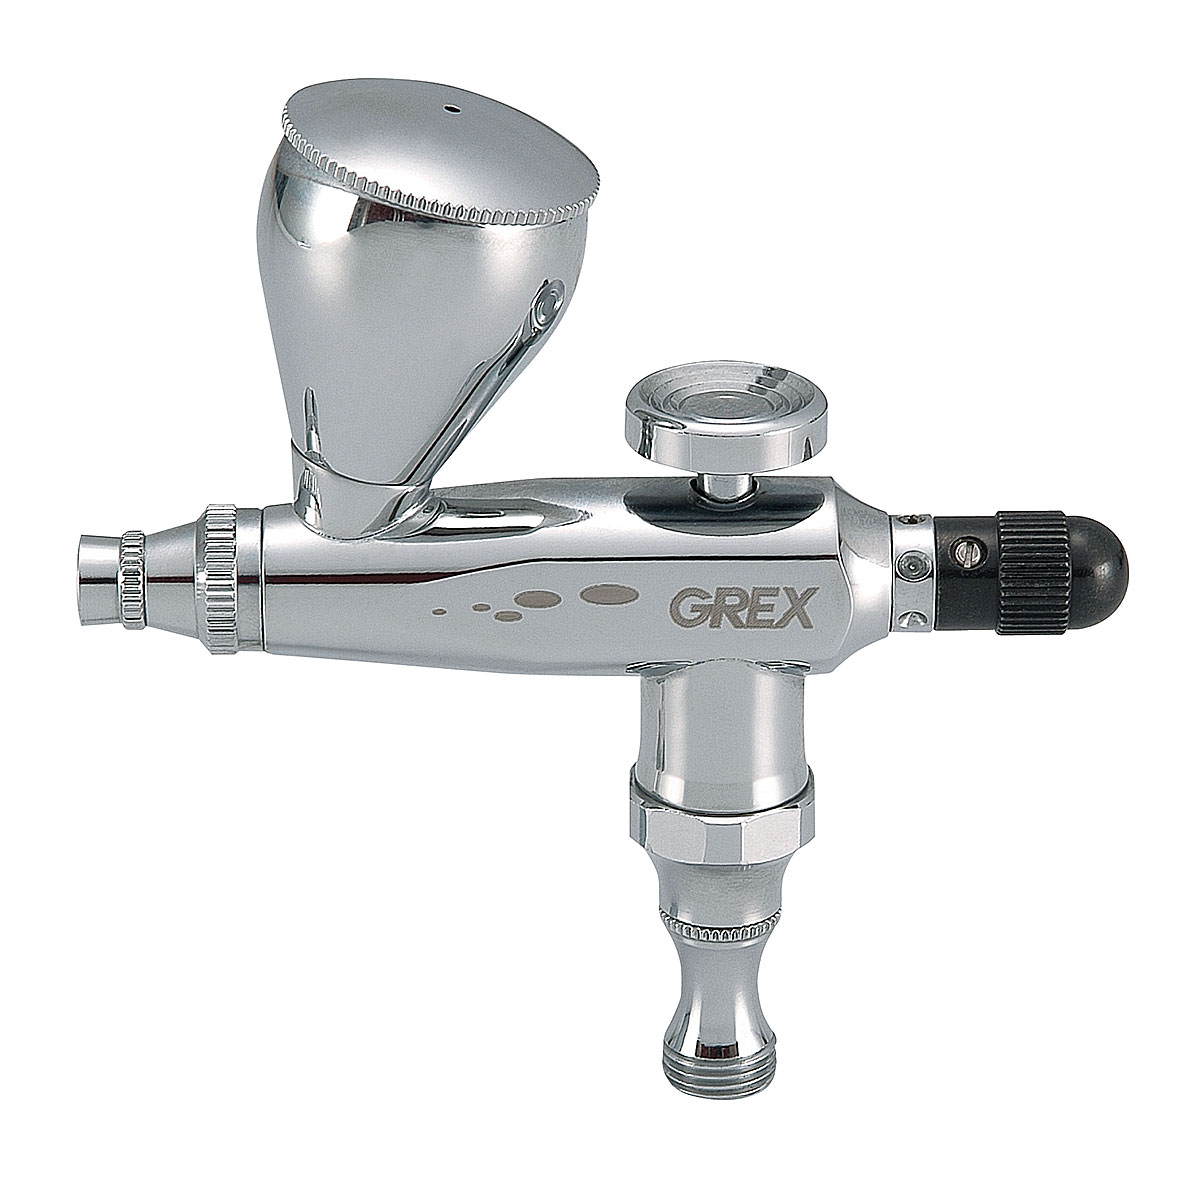 Grex Genesis Series Single Action Airbrush